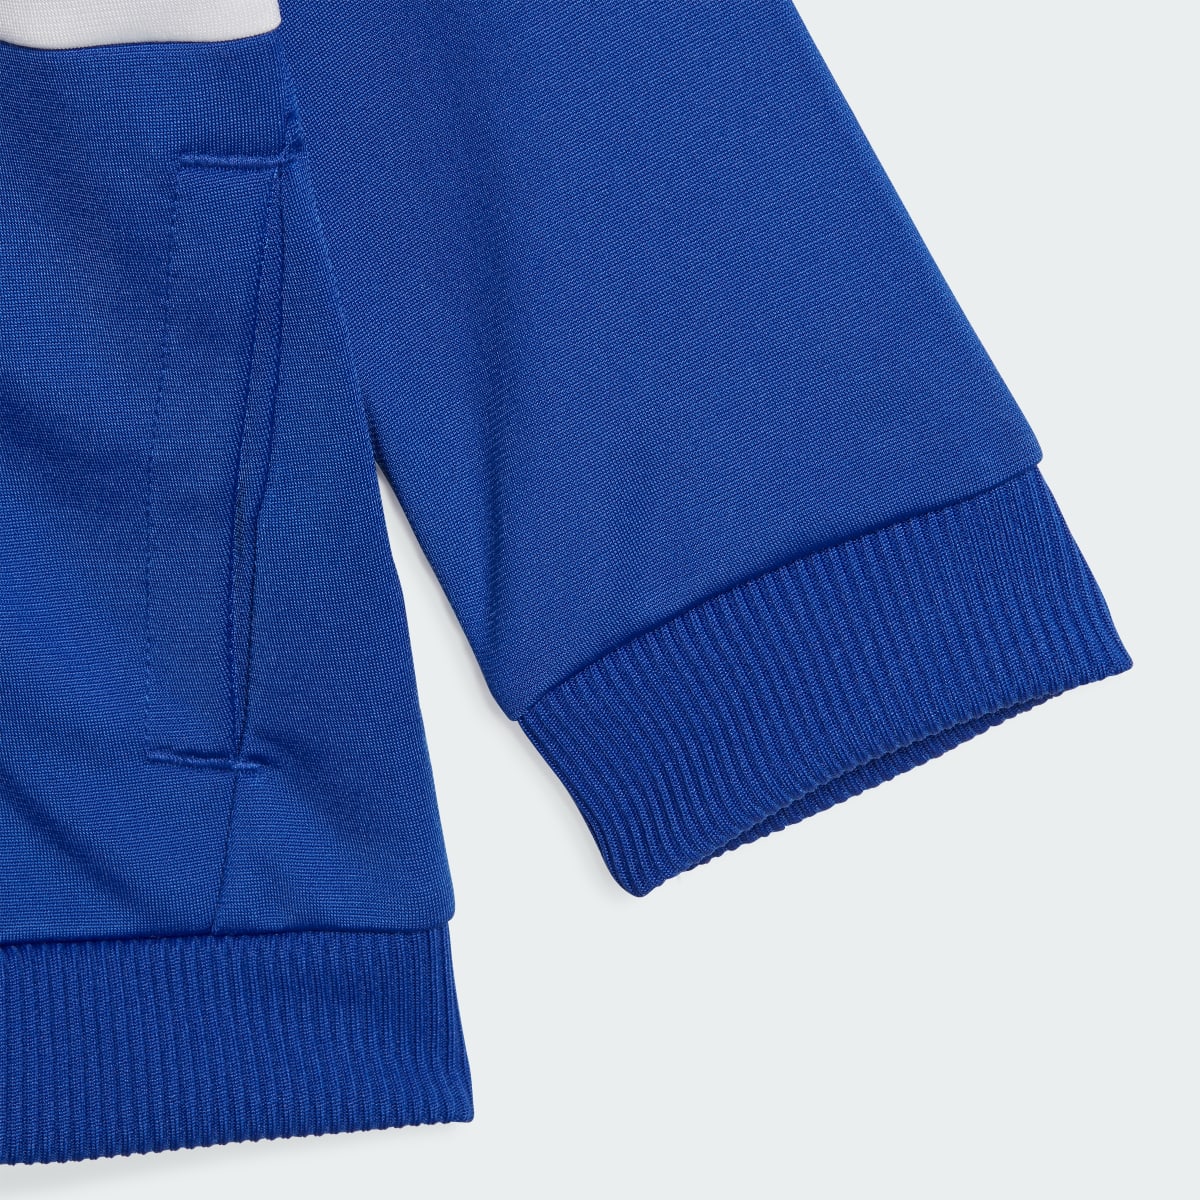 Adidas Tiberio 3-Streifen Colorblock Shiny Kids Trainingsanzug. 7